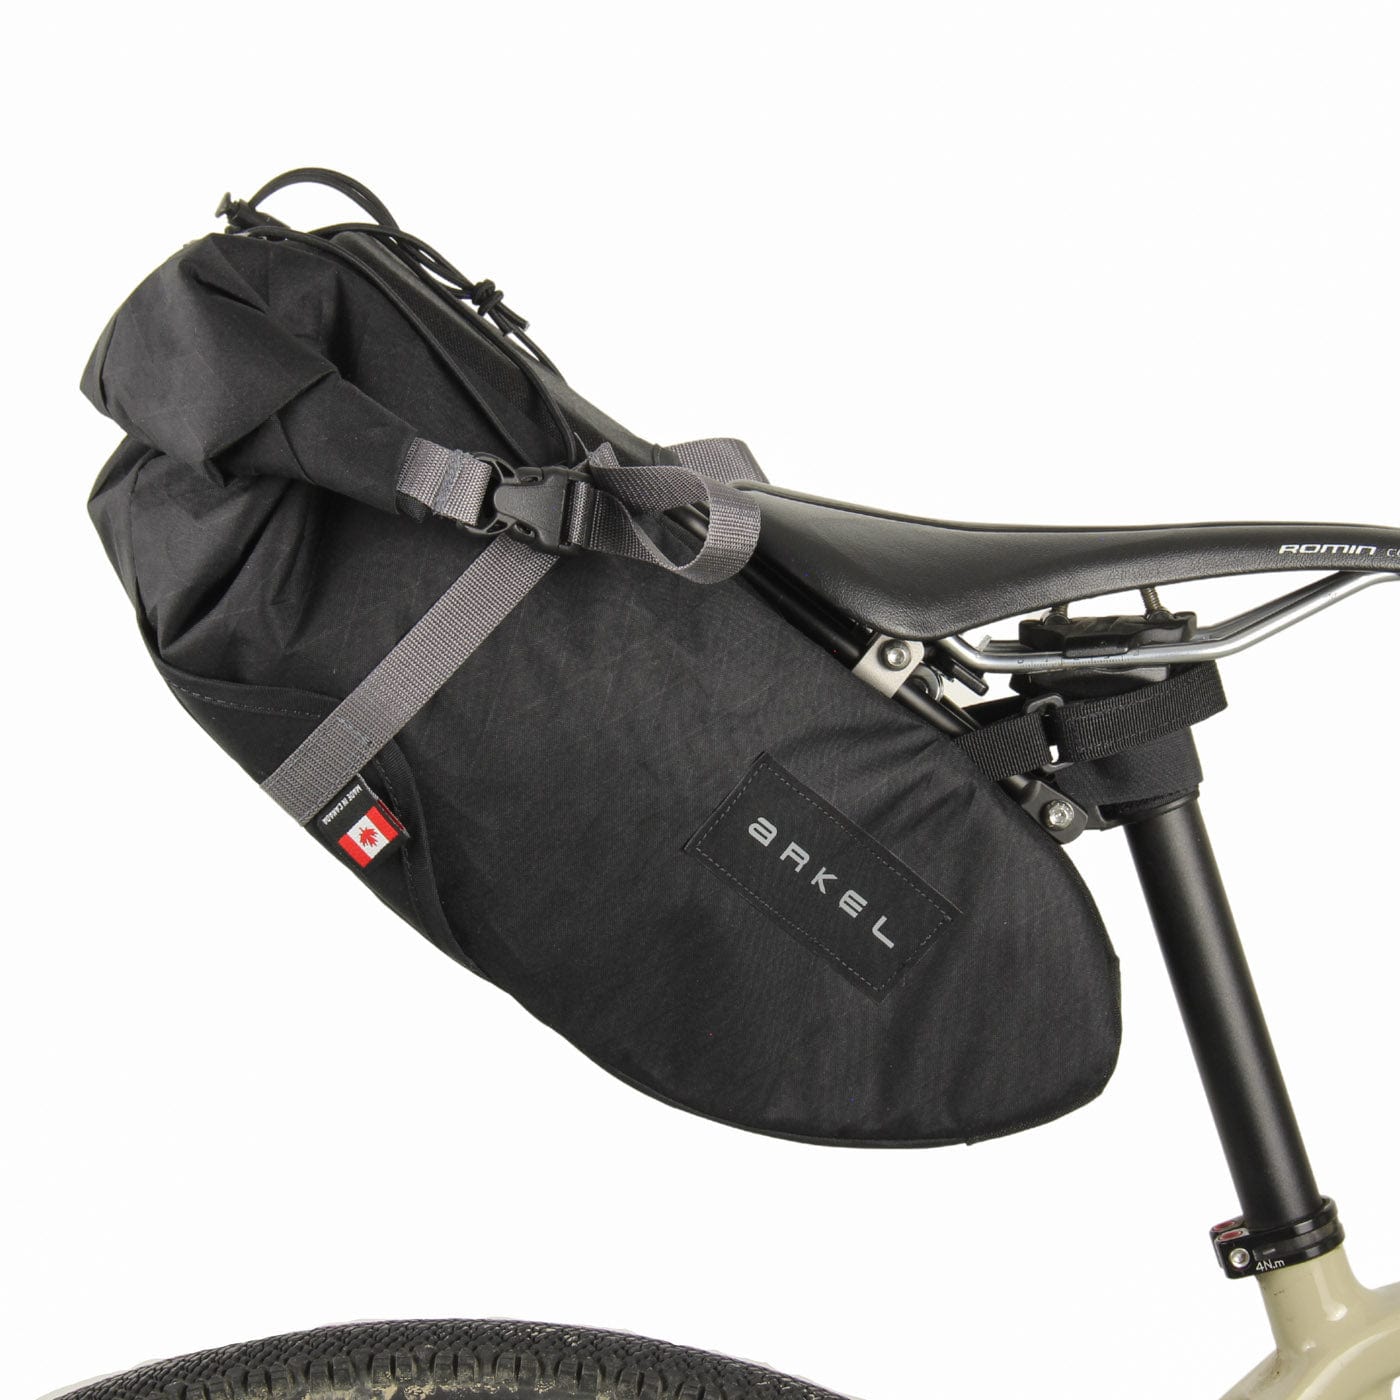 Arkel Bike Bags Seatpacker - Saddlebag